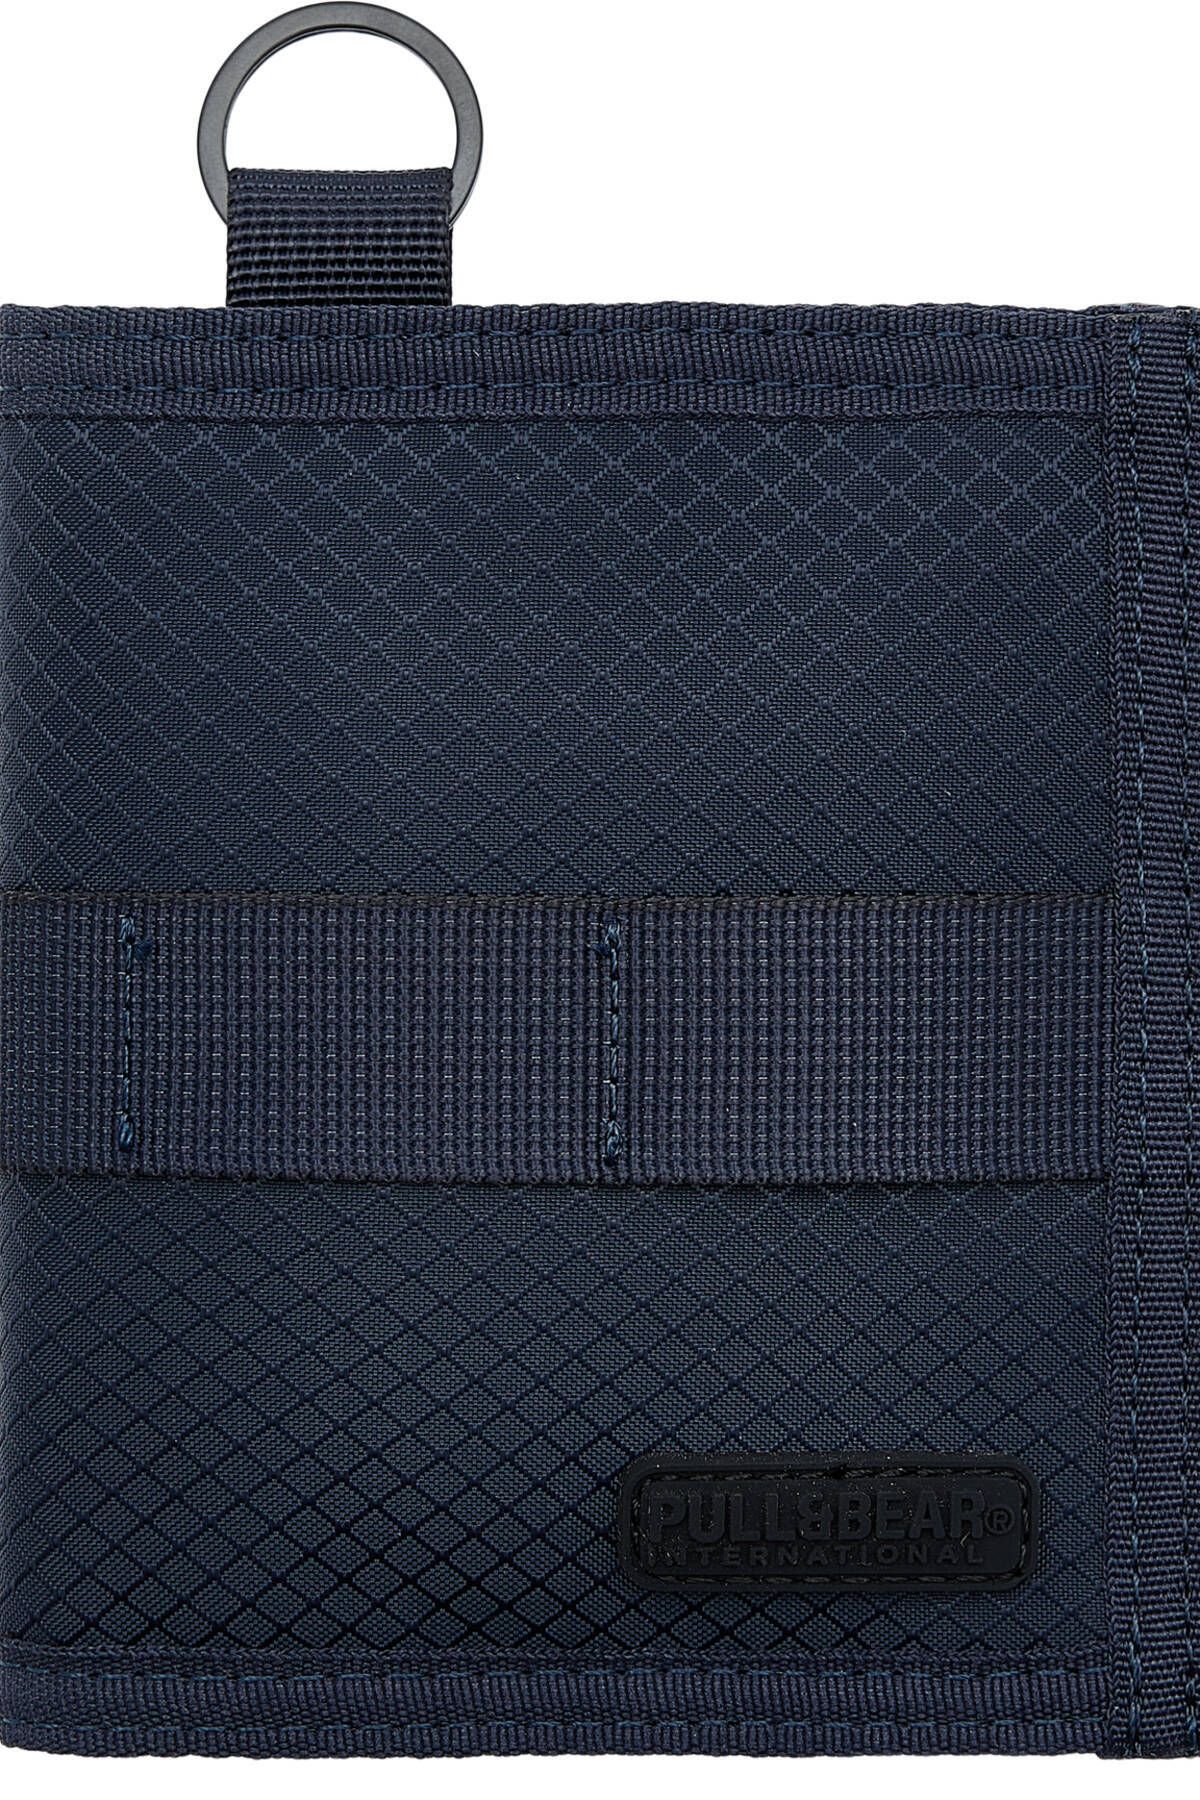 Pull & Bear Çıtçıt düğmeli mavi dağcı cüzdanı